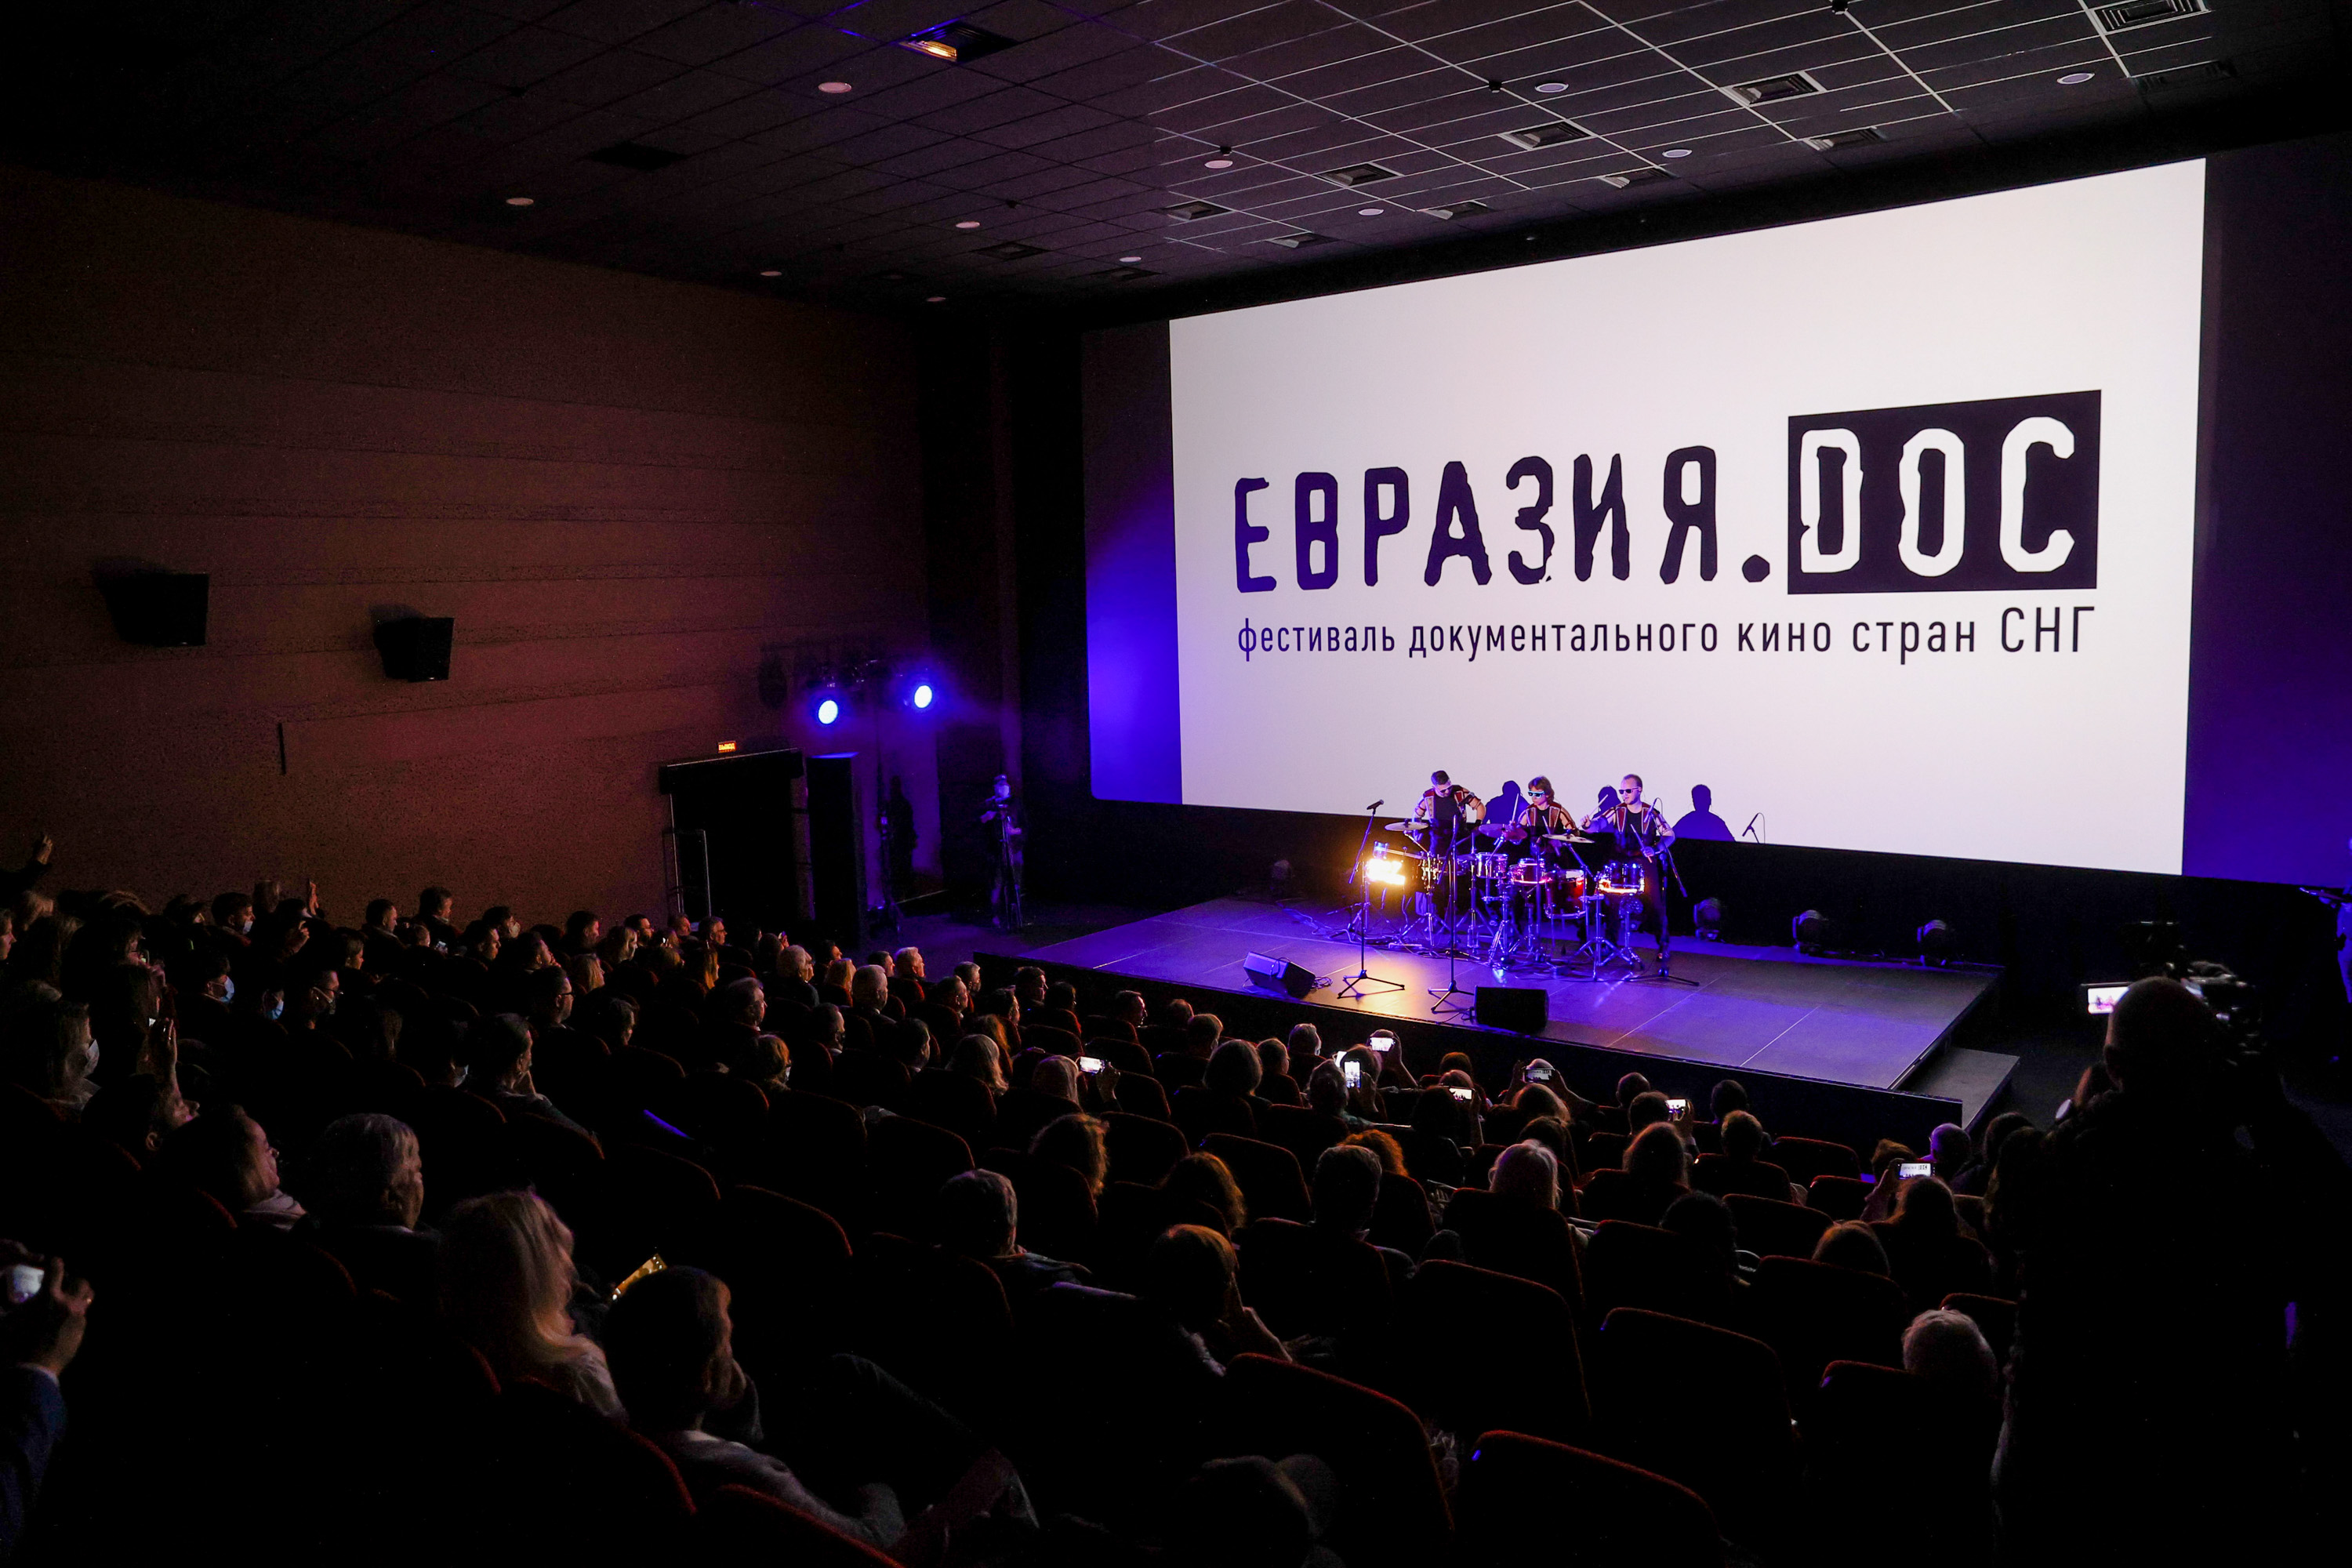 В Смоленске стартовал фестиваль документального кино стран СНГ "Евразия.DOC" 